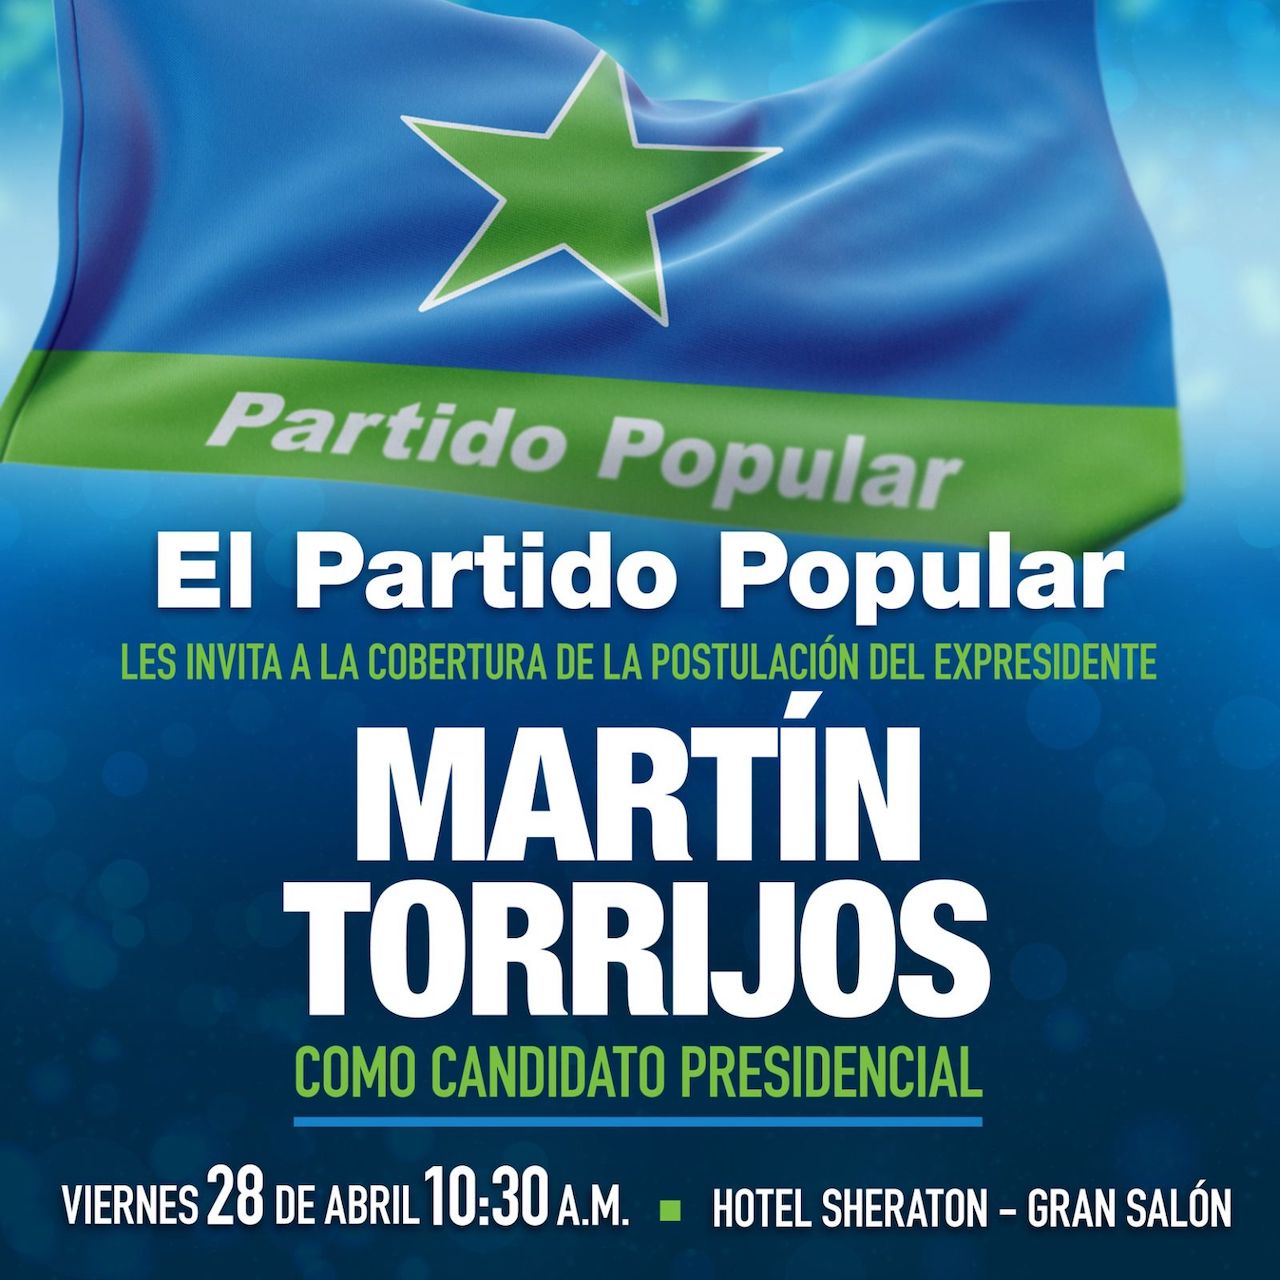 Viernes 28 de abril Postulación de Martín Torrijos como candidato